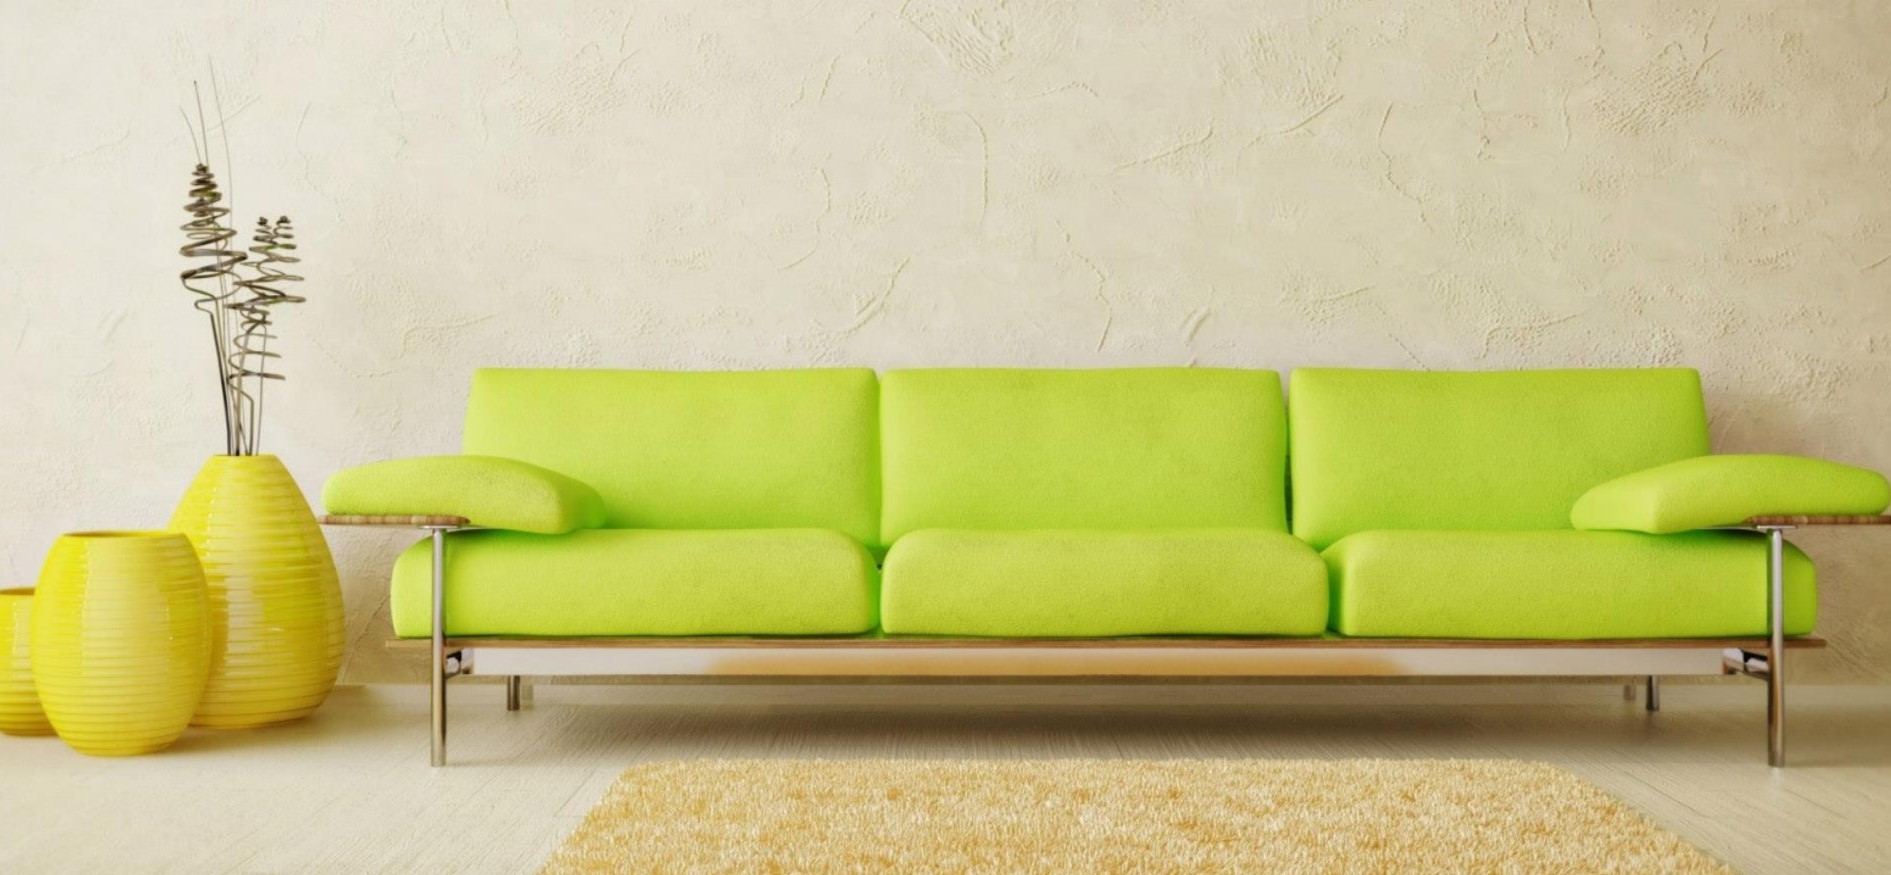 Светло-зеленый диван можно использовать в качестве интерьерного акцента в детской комнате